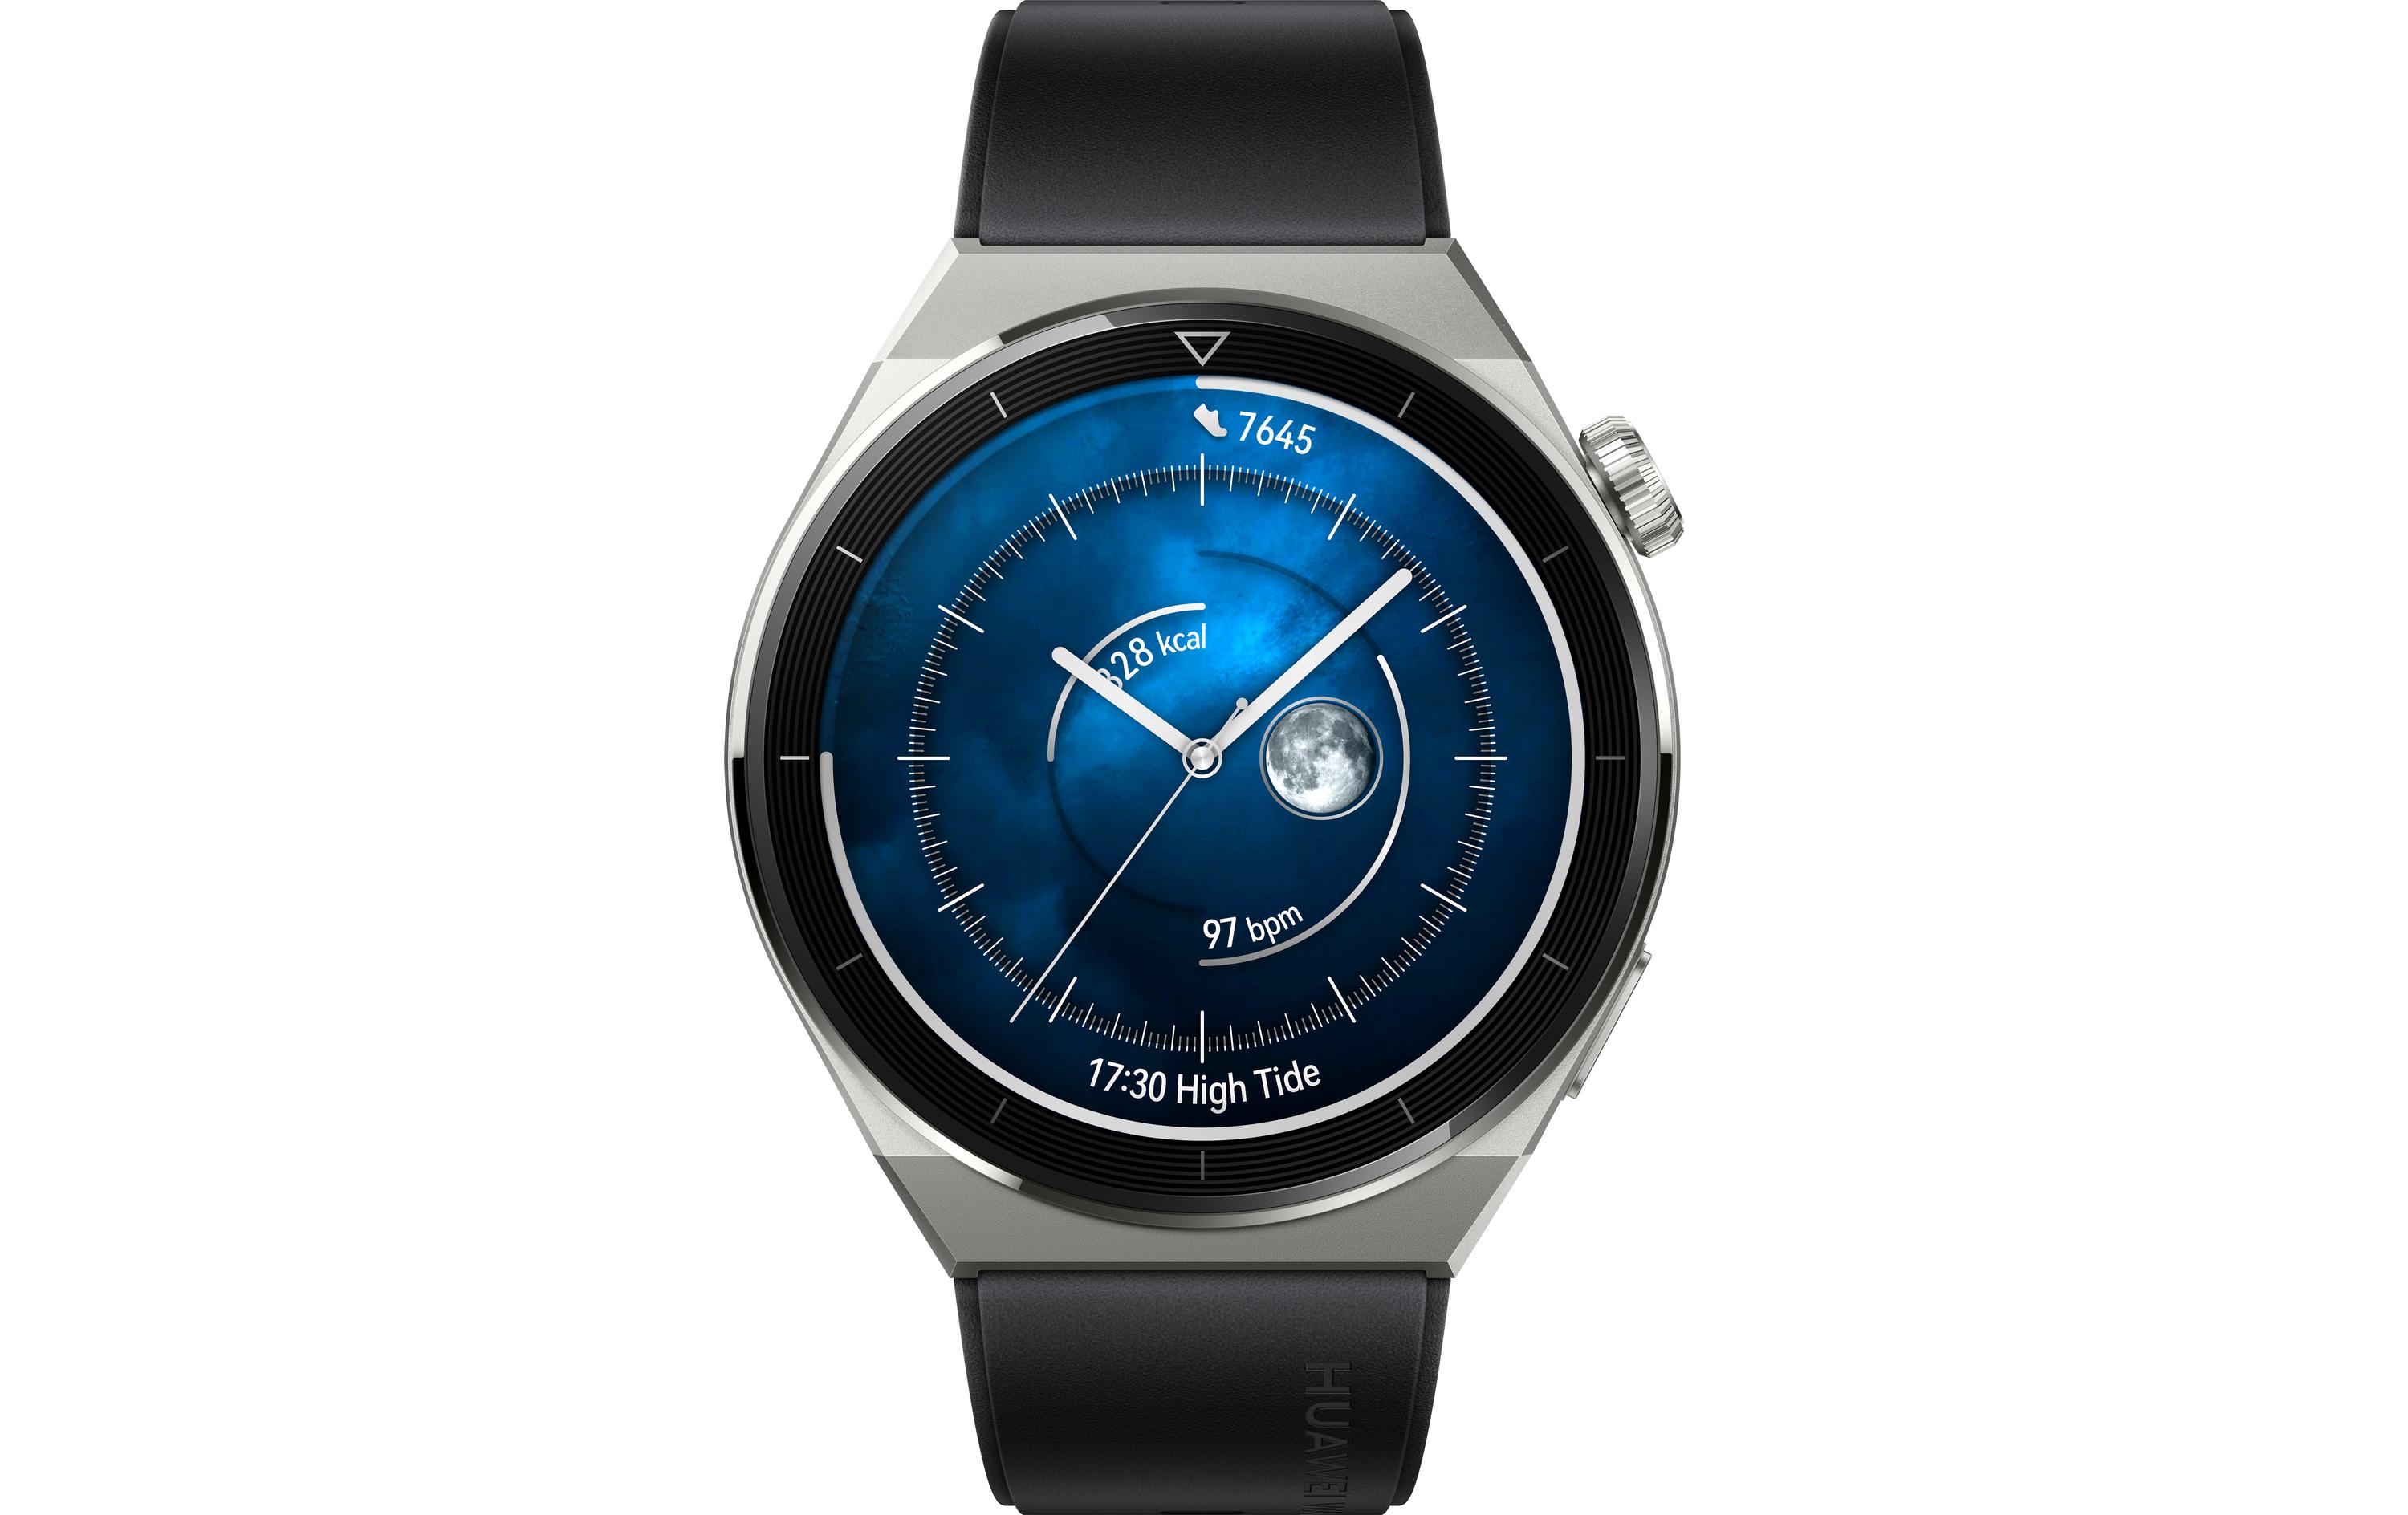 Huawei Watch GT3 Pro 46 mm Black